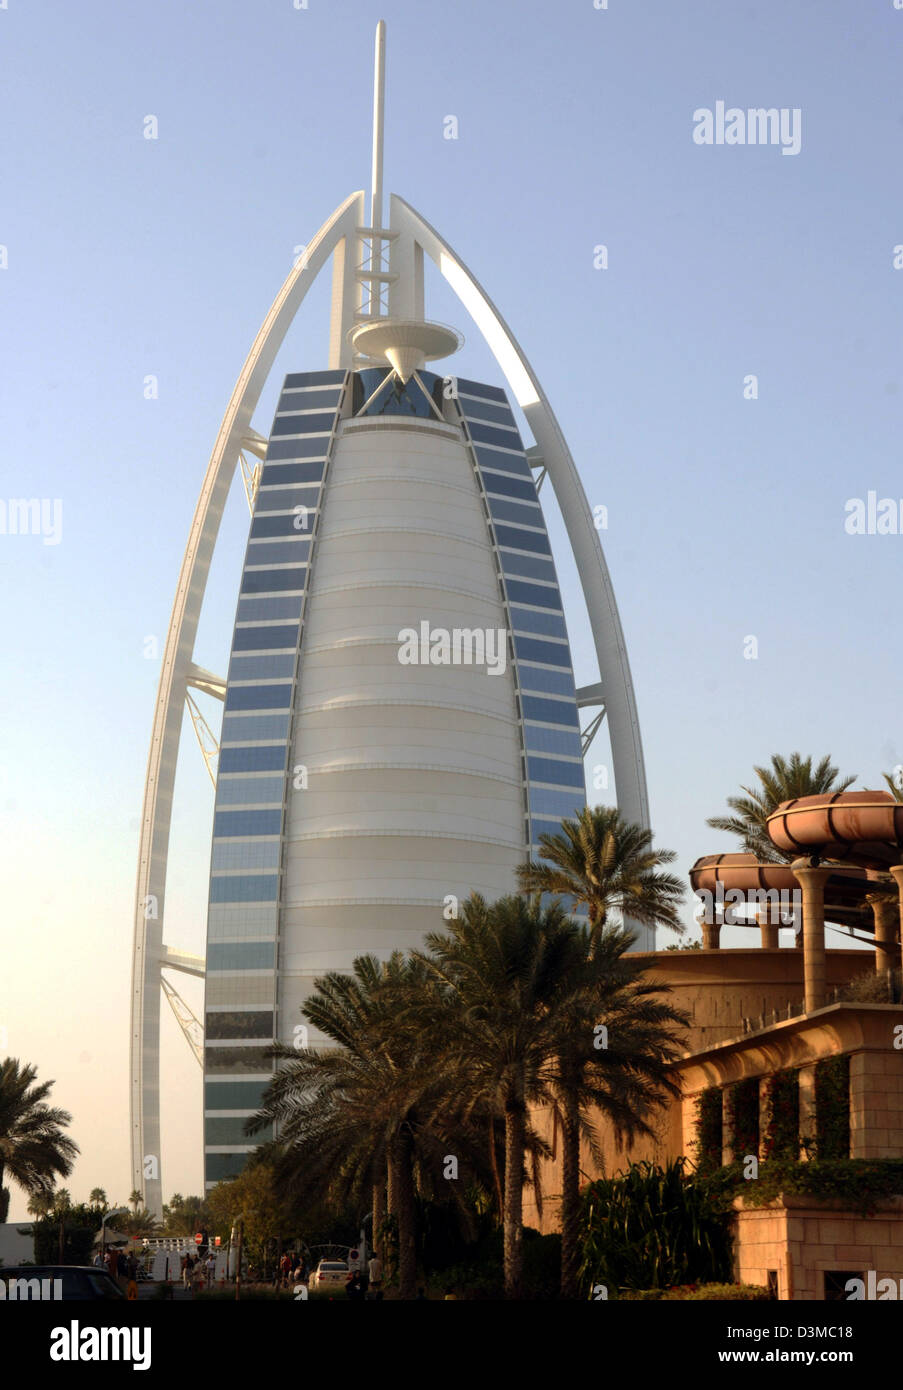 Das Bild zeigt die für Weg sichtbar basierend auf einem Segel-Luxus-Hotel Burj al Arab, auch genannt The Arabian Tower in Dubai City, Vereinigte Arabische Emirate, 12. Januar 2006. Das Hotel liegt auf einer kleinen künstlichen Inseln inmitten des Meeres und ist die höchste Luxus-Unterkunft der Welt mit einer Höhe von 321 Metern. Foto: Bernd Weissbrod Stockfoto